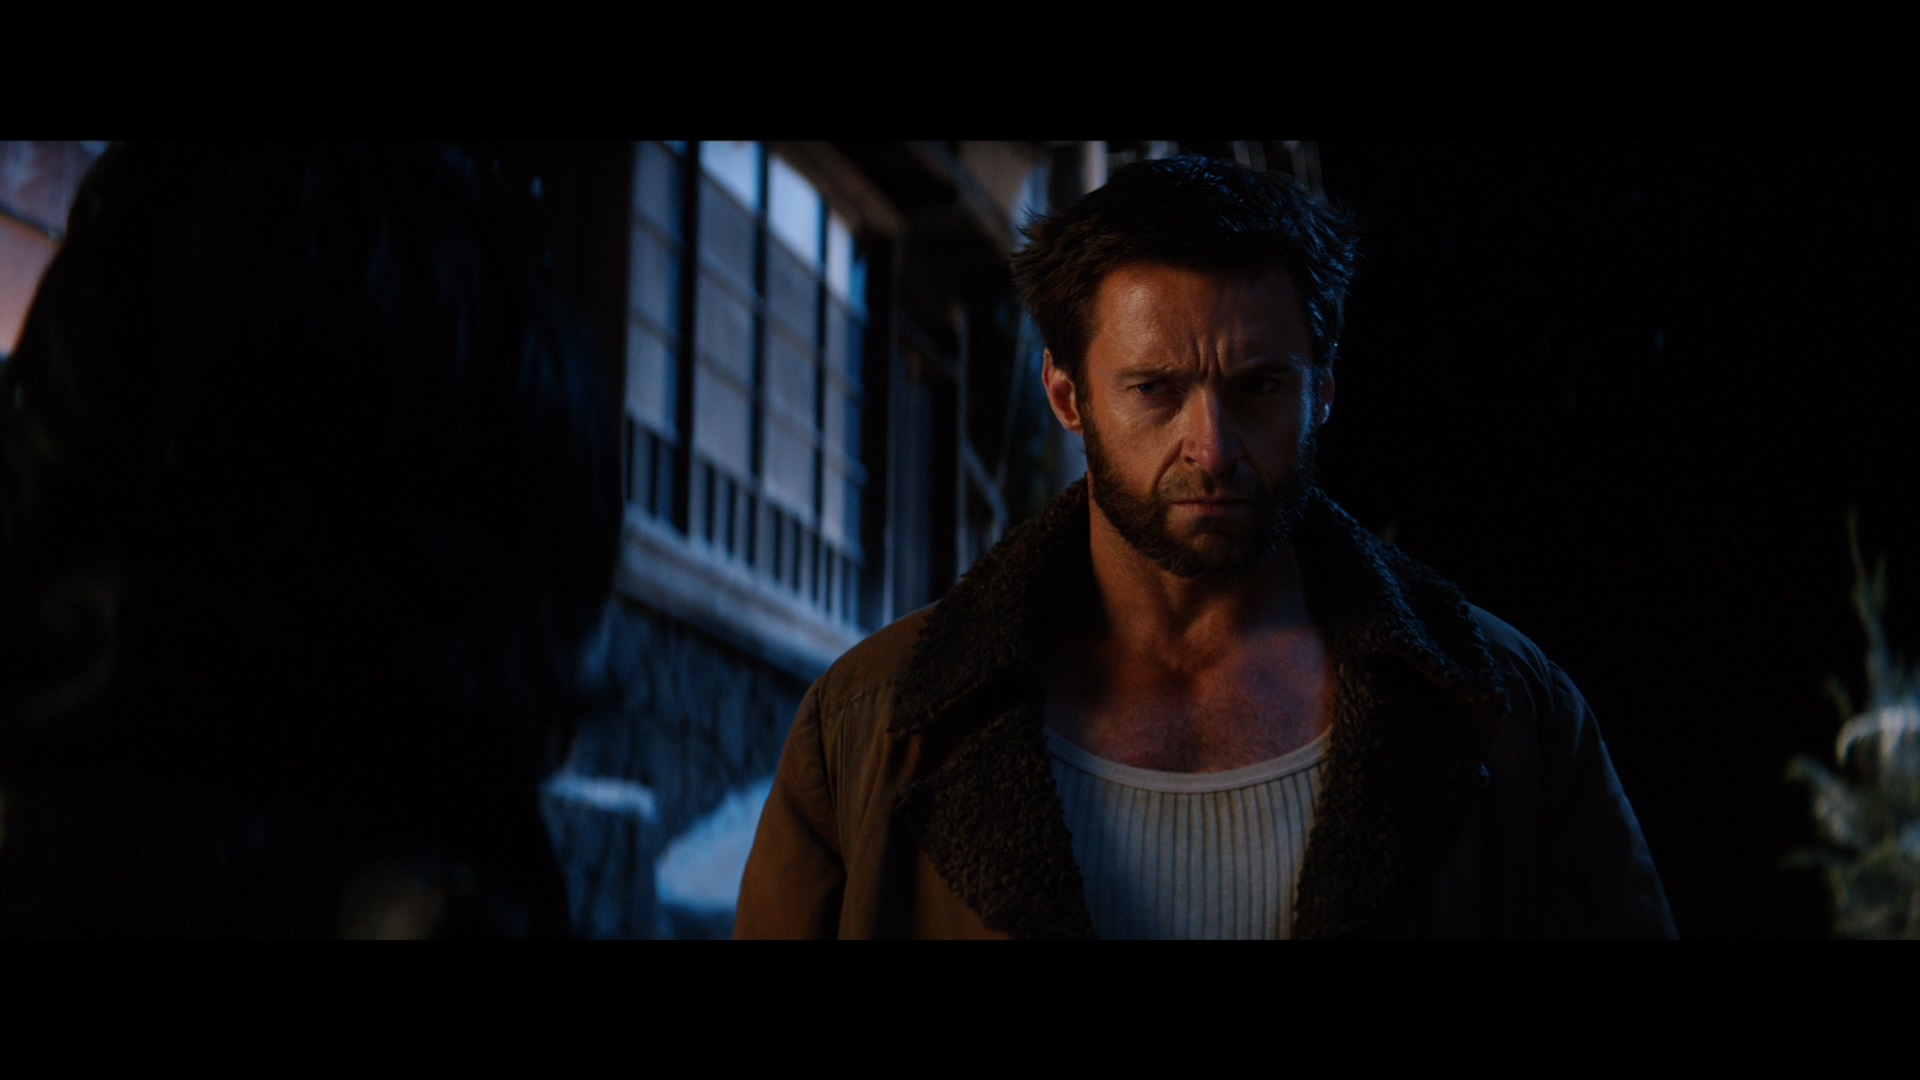 [金刚狼2].The.Wolverine.2013.3D.TW.BluRay.1080p.AVC.DTS-HD.MA.7.1-OMEGA    46.33G3 n, c6 W& S1 Y-11.jpg